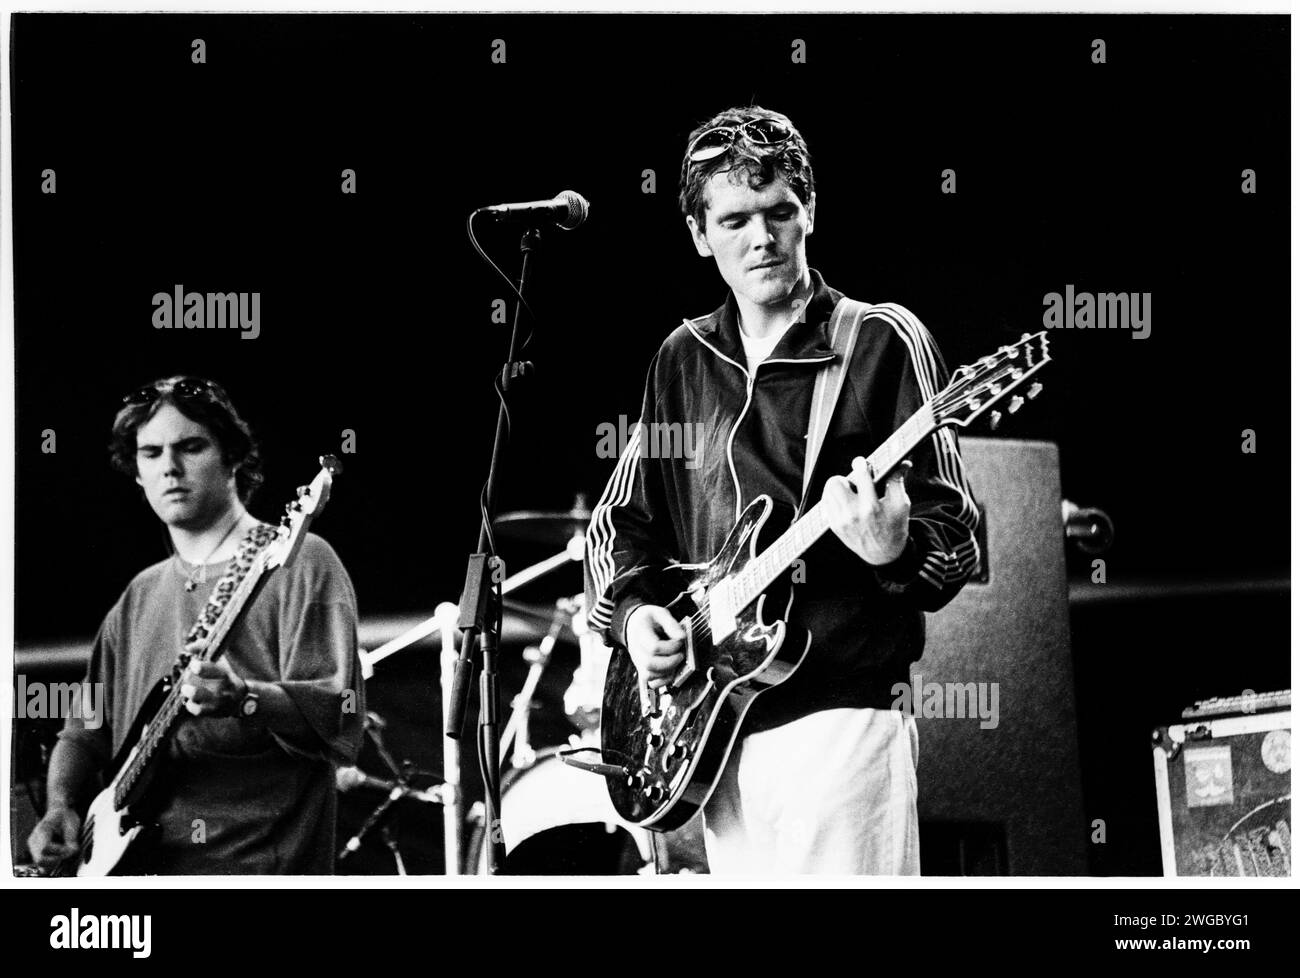 SUPER FURRY ANIMALS, DÉBUT GIG, 1995 : Huw Bunford (guitare) et Guto Pryce (basse) du groupe gallois Super Furry Animals jouant au Cardiff Big Weekend Festival sur Museum Lawns à Cardiff, pays de Galles, Royaume-Uni le 11 août 1995. Photo : Rob Watkins. INFO : Super Furry Animals, un groupe de rock psychédélique gallois formé en 1993, a apporté un son éclectique mêlant rock, pop et éléments électroniques. Des albums comme 'Radiator' et 'Fuzzy Logic' ont présenté leur approche inventive et défiant le genre, consolidant leur statut de pionniers dans la scène musicale alternative. Banque D'Images